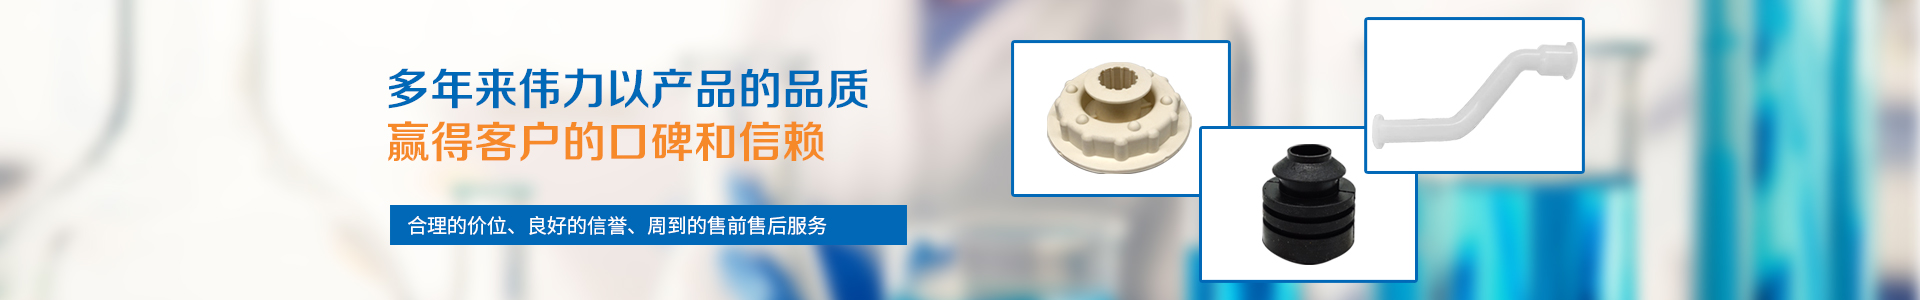 橡胶的种类特性和用途_江阴市伟力塑胶有限公司